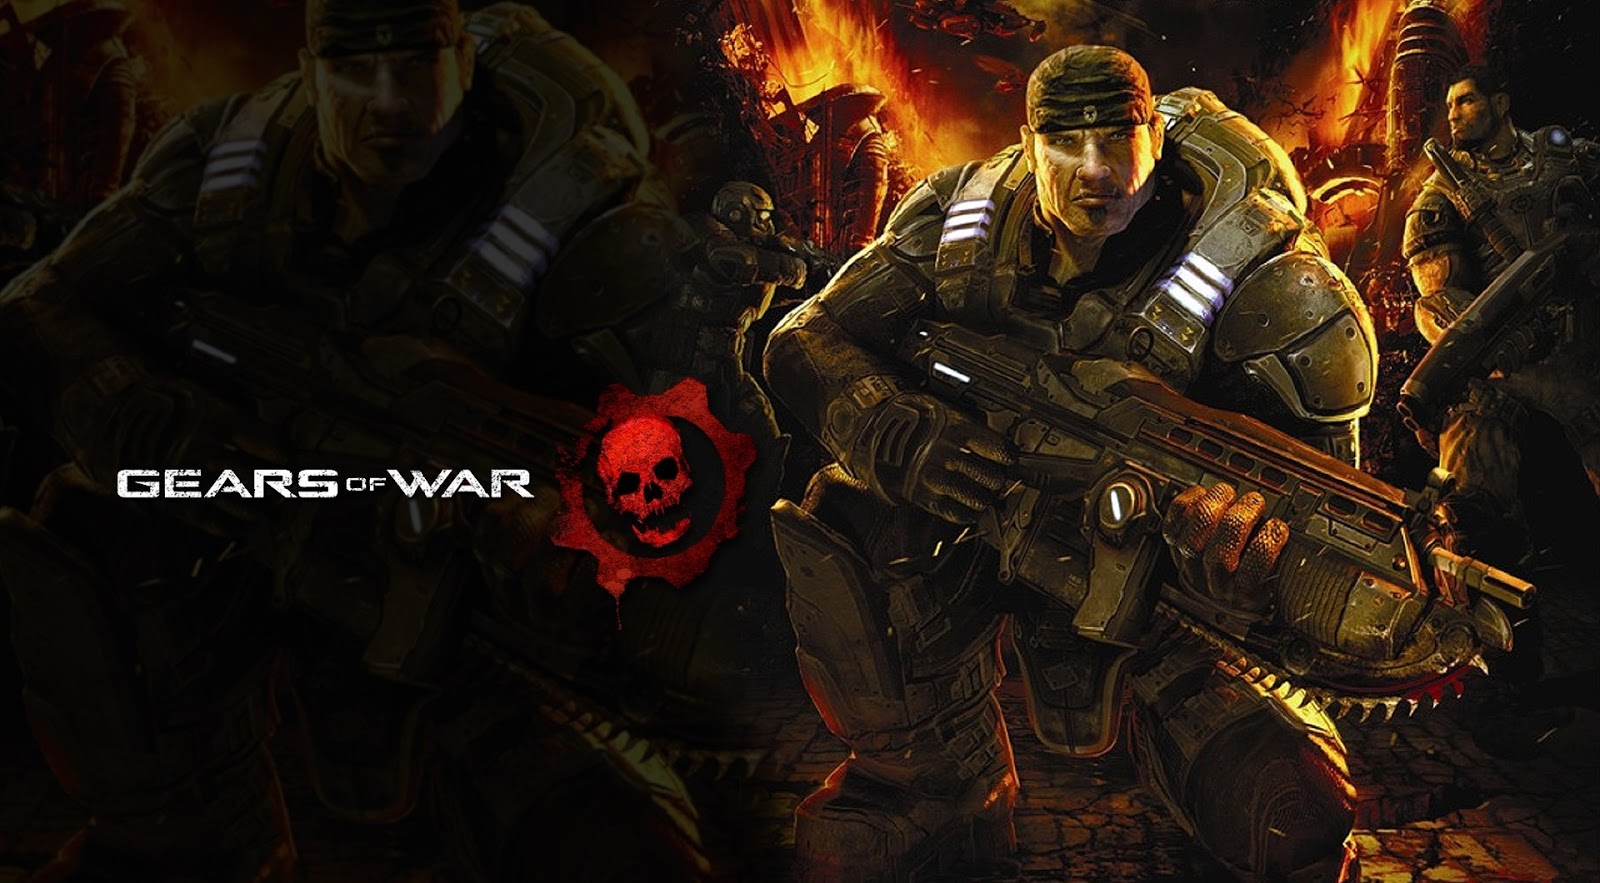 Gears of war 2 pc download repack free